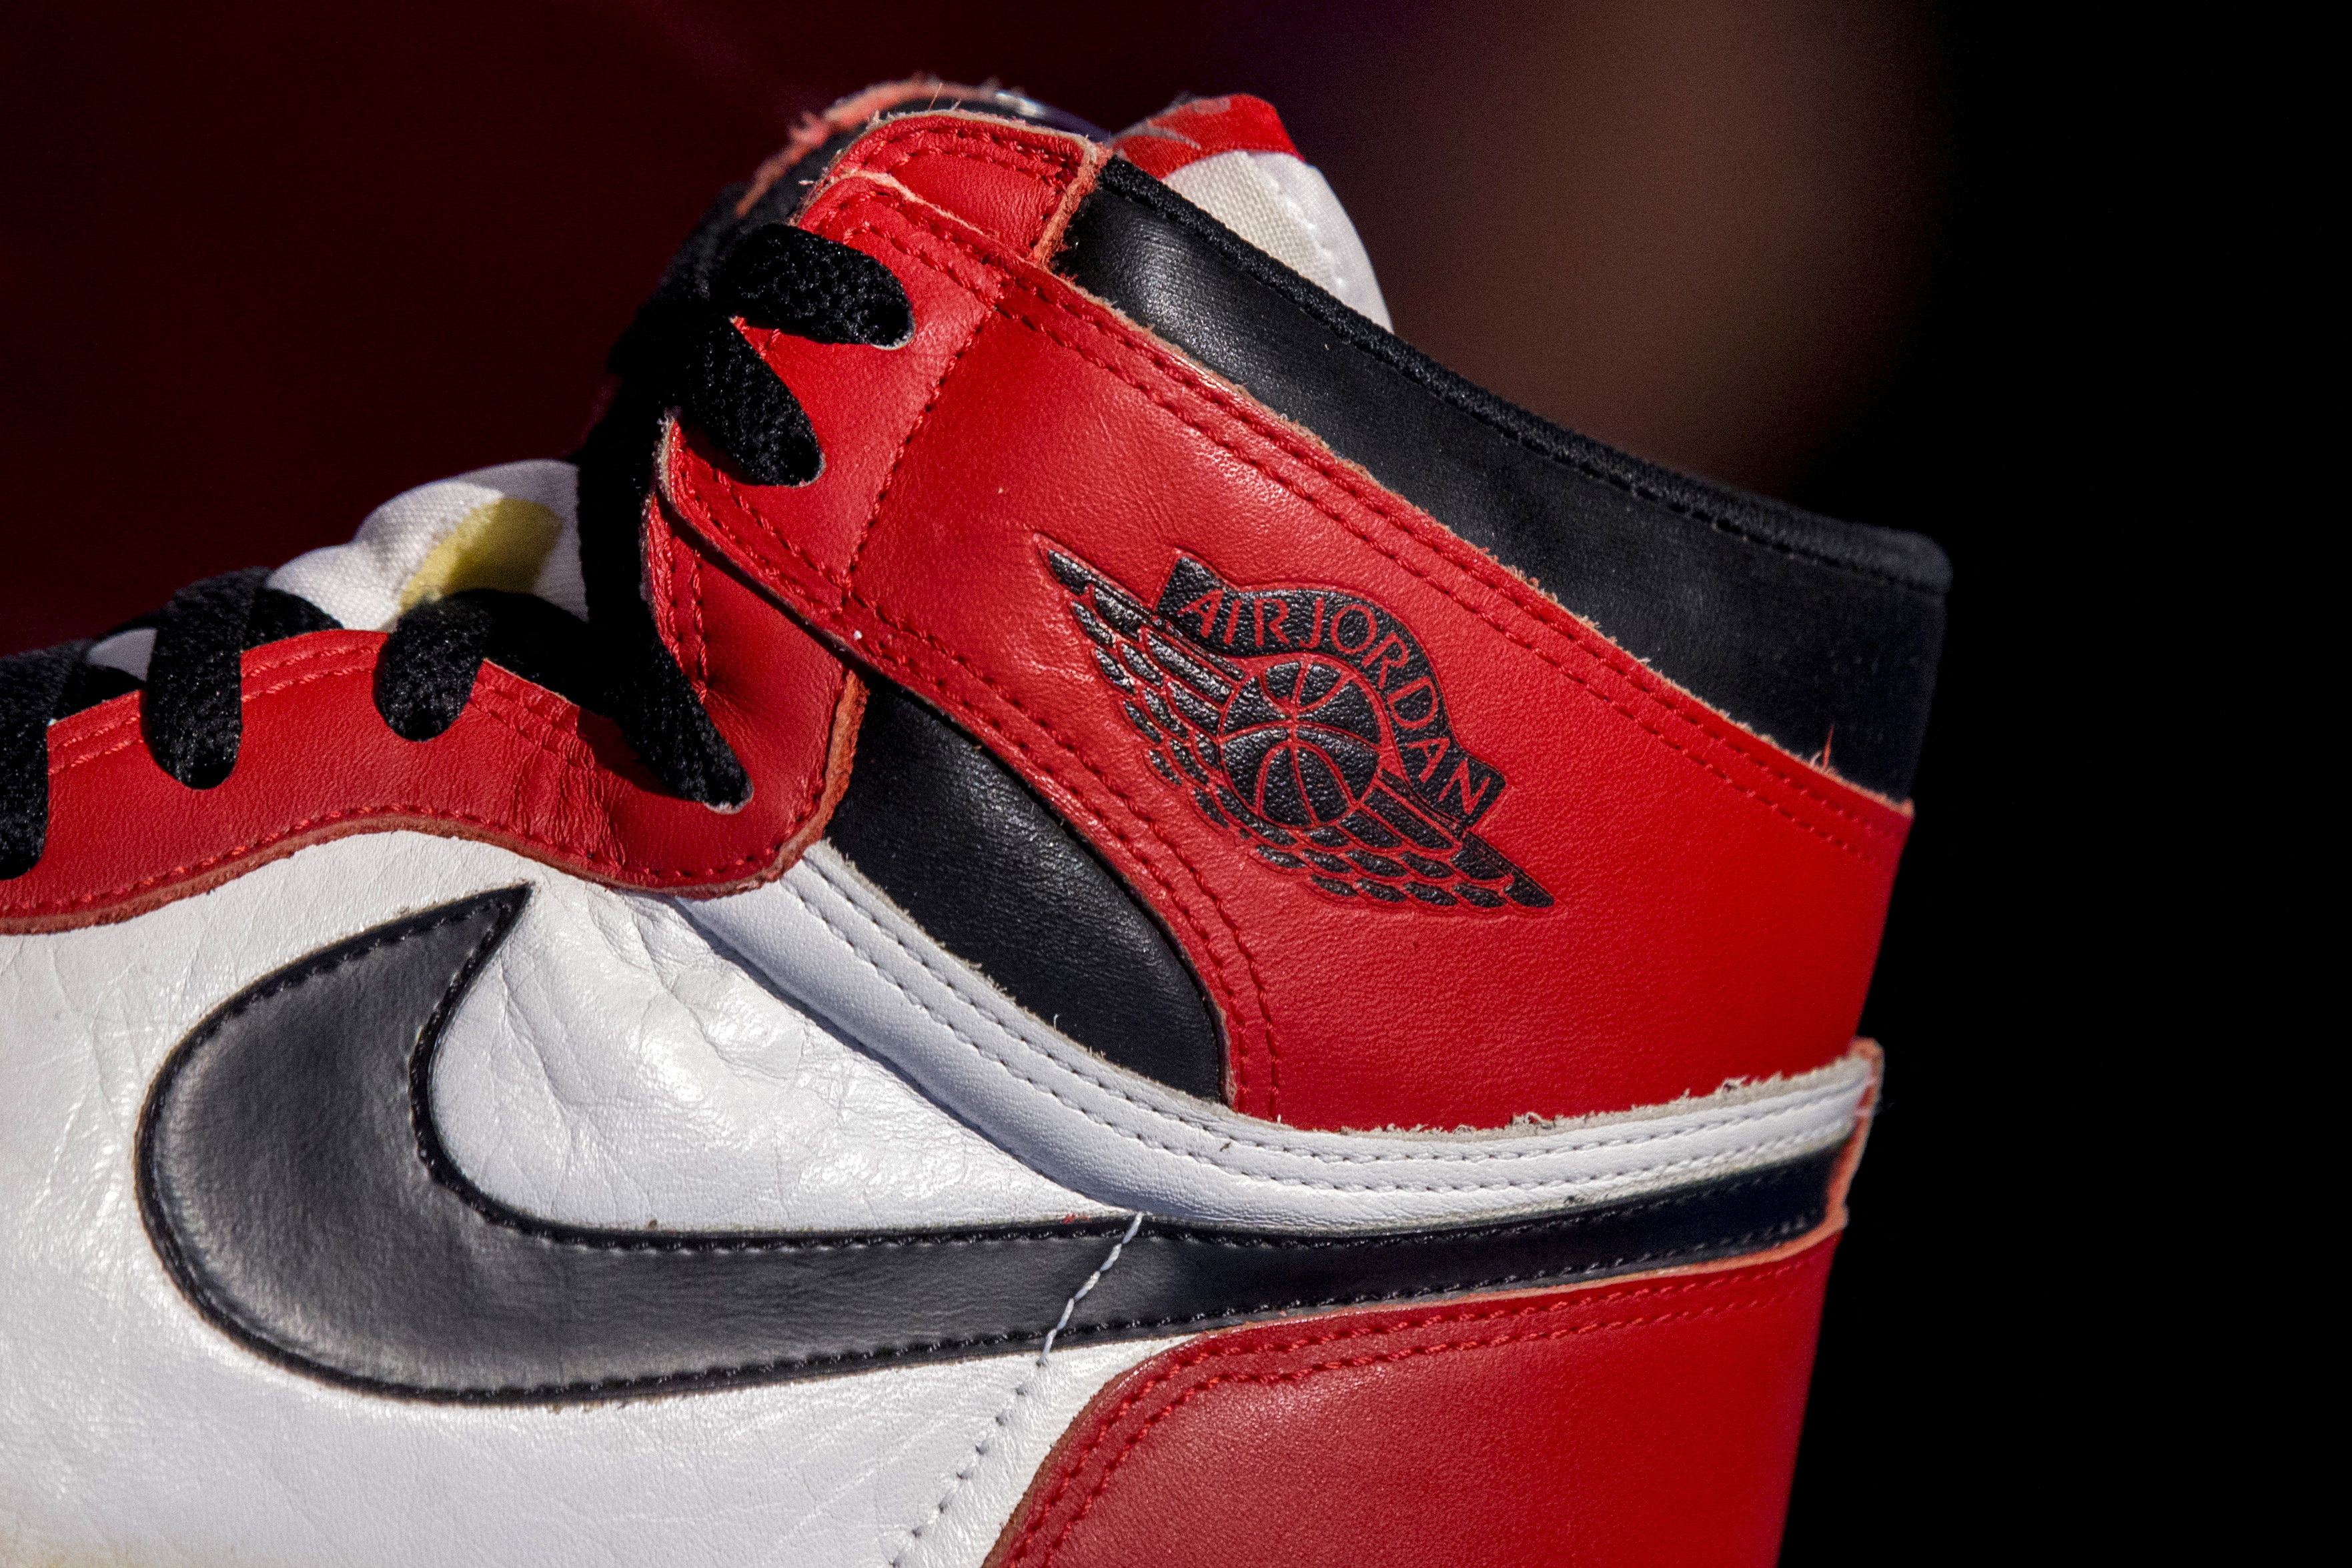 Nike Air Jordans are losing resale value. Is sneaker culture